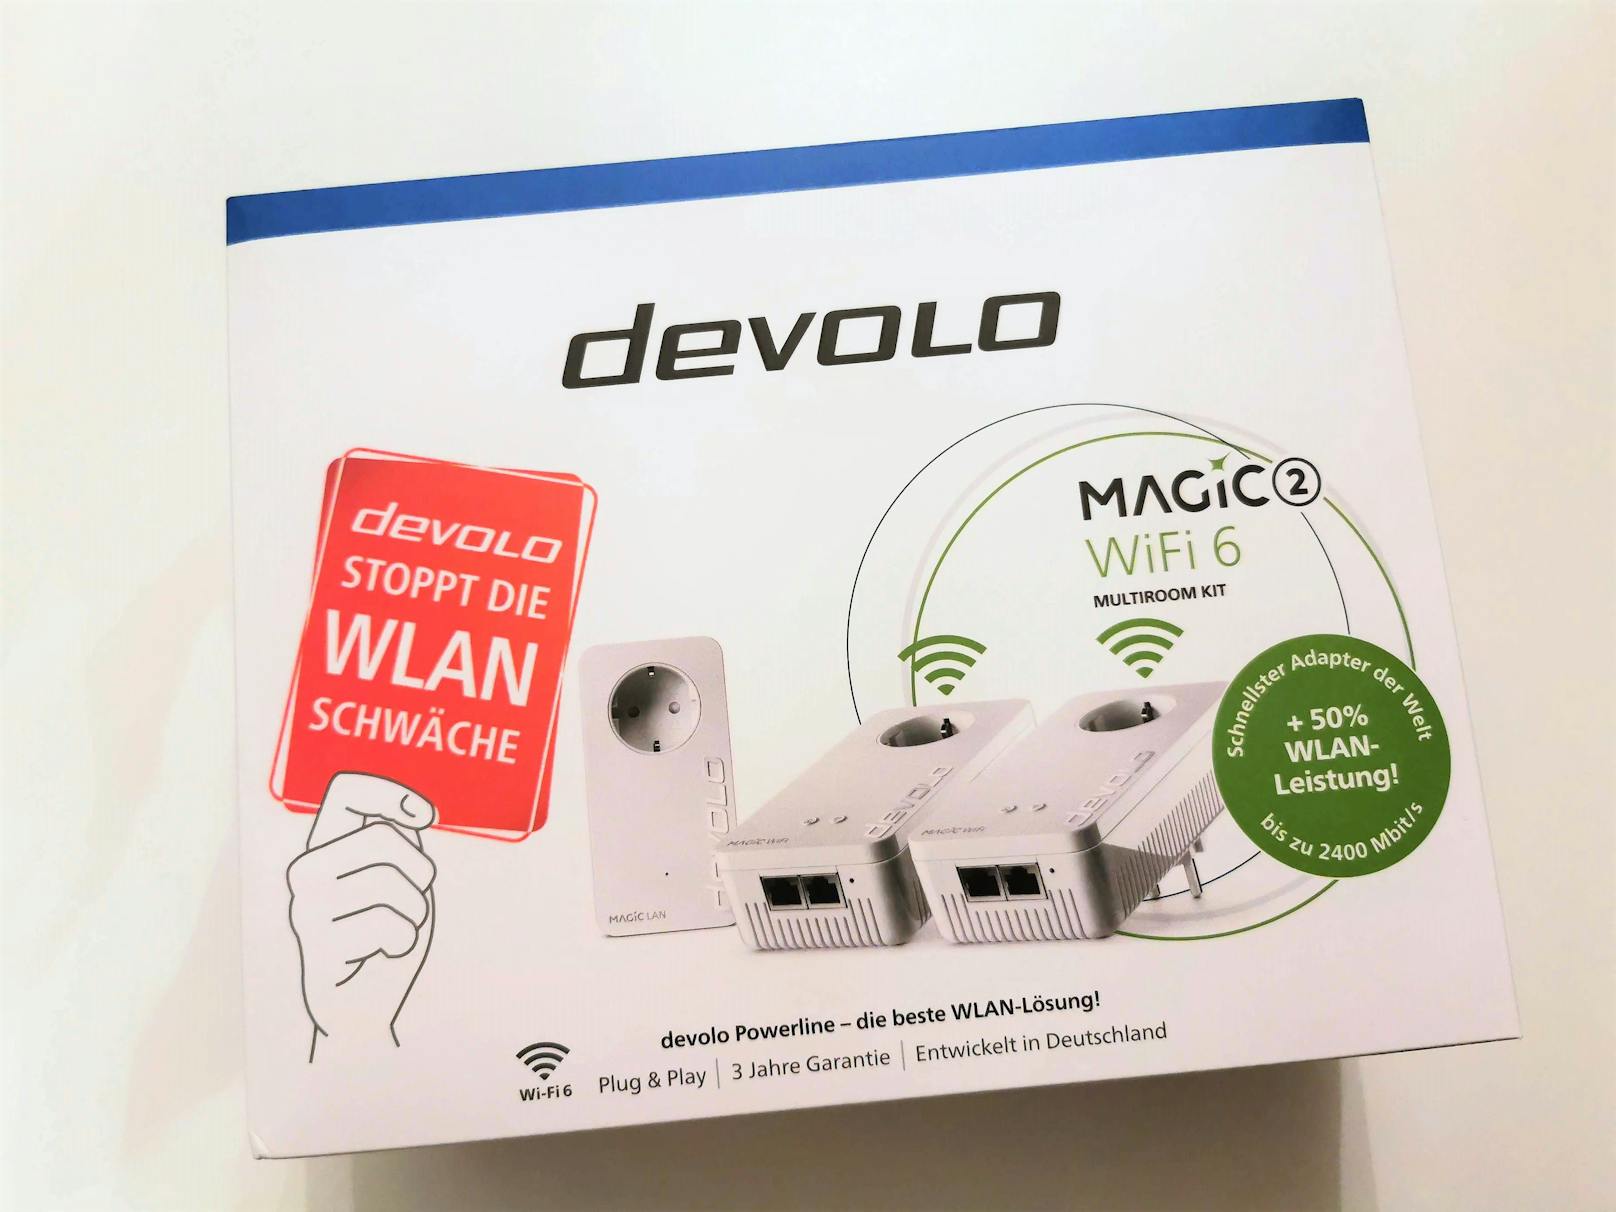 Die brandaktuellen Powerline-Adapter Devolo Magic 2 Wifi 6 wurden mit dem neuen WLAN-Standard 6 alias WLAN-ax ausgestattet.&nbsp;